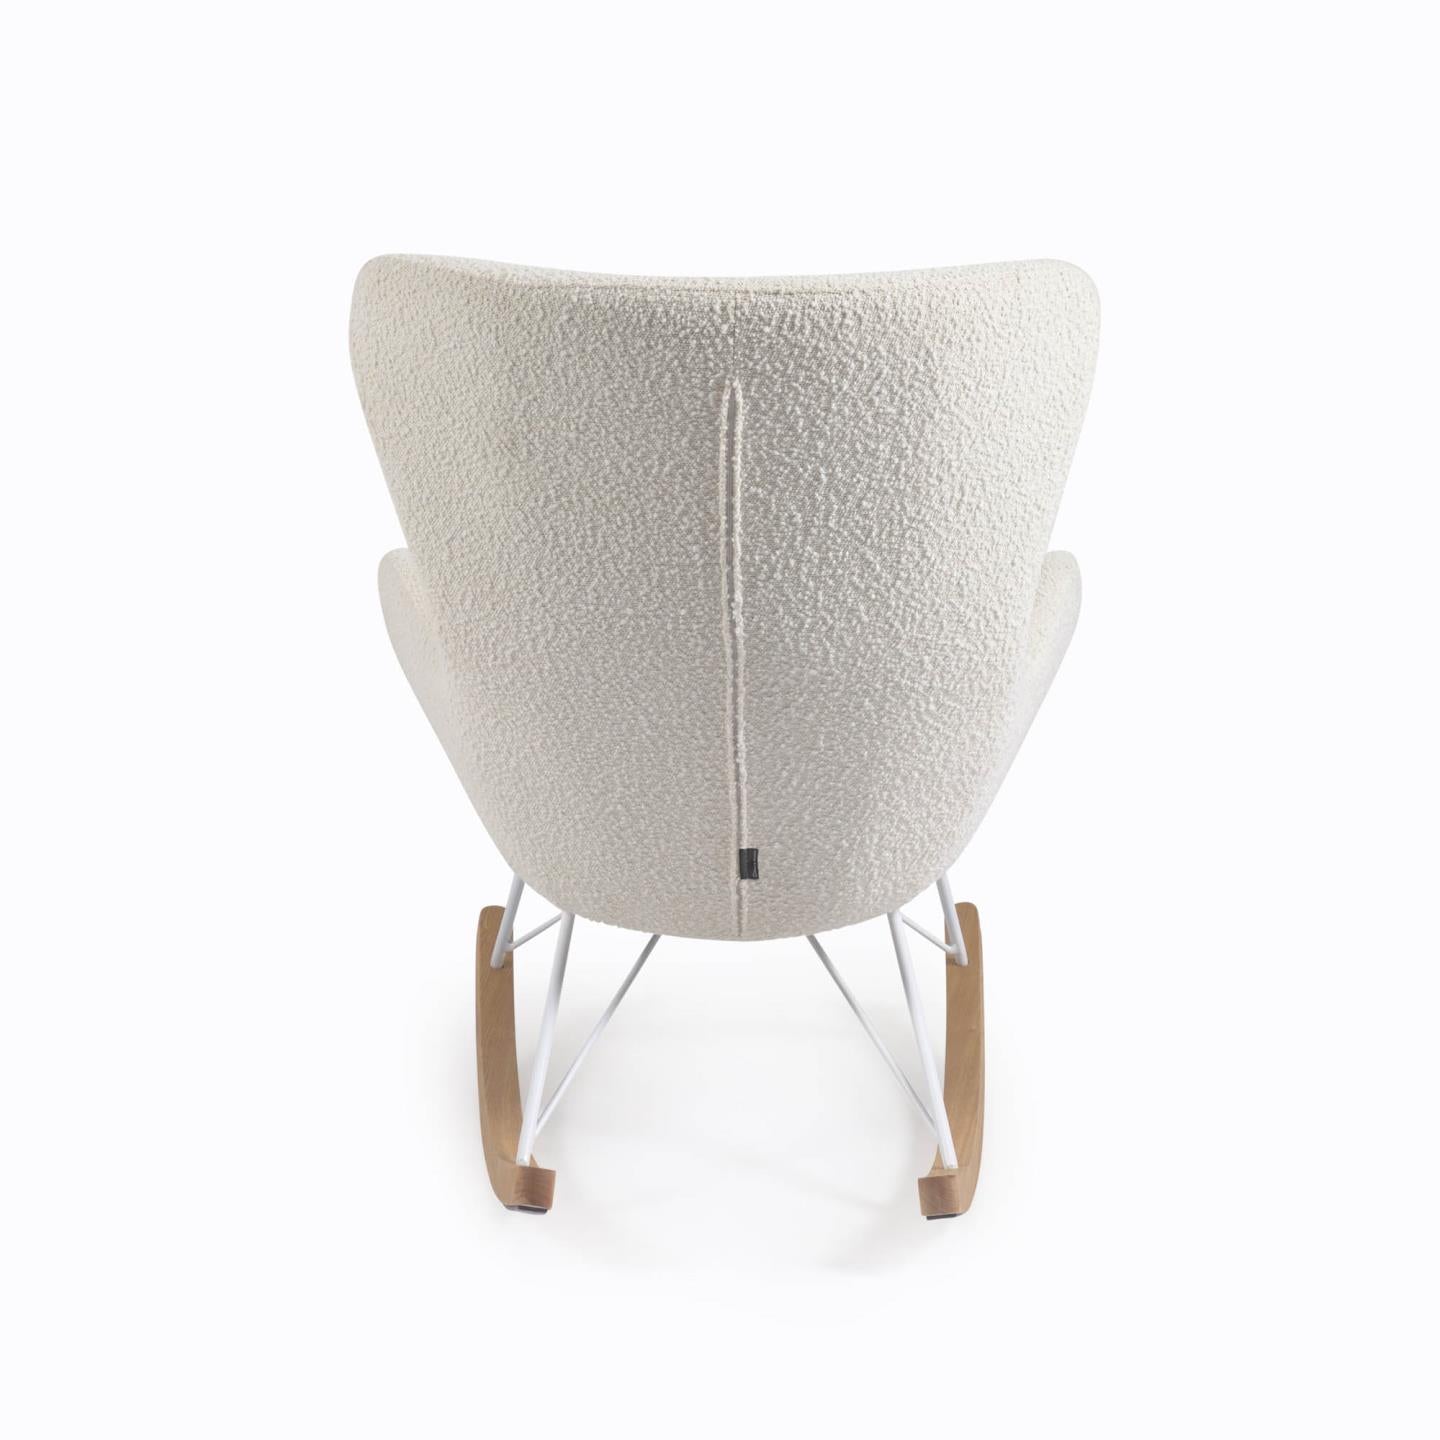 Zuidwest Harmonisch Ontdekking Kave Home Vania schommelstoel wit fleece – HelloChair